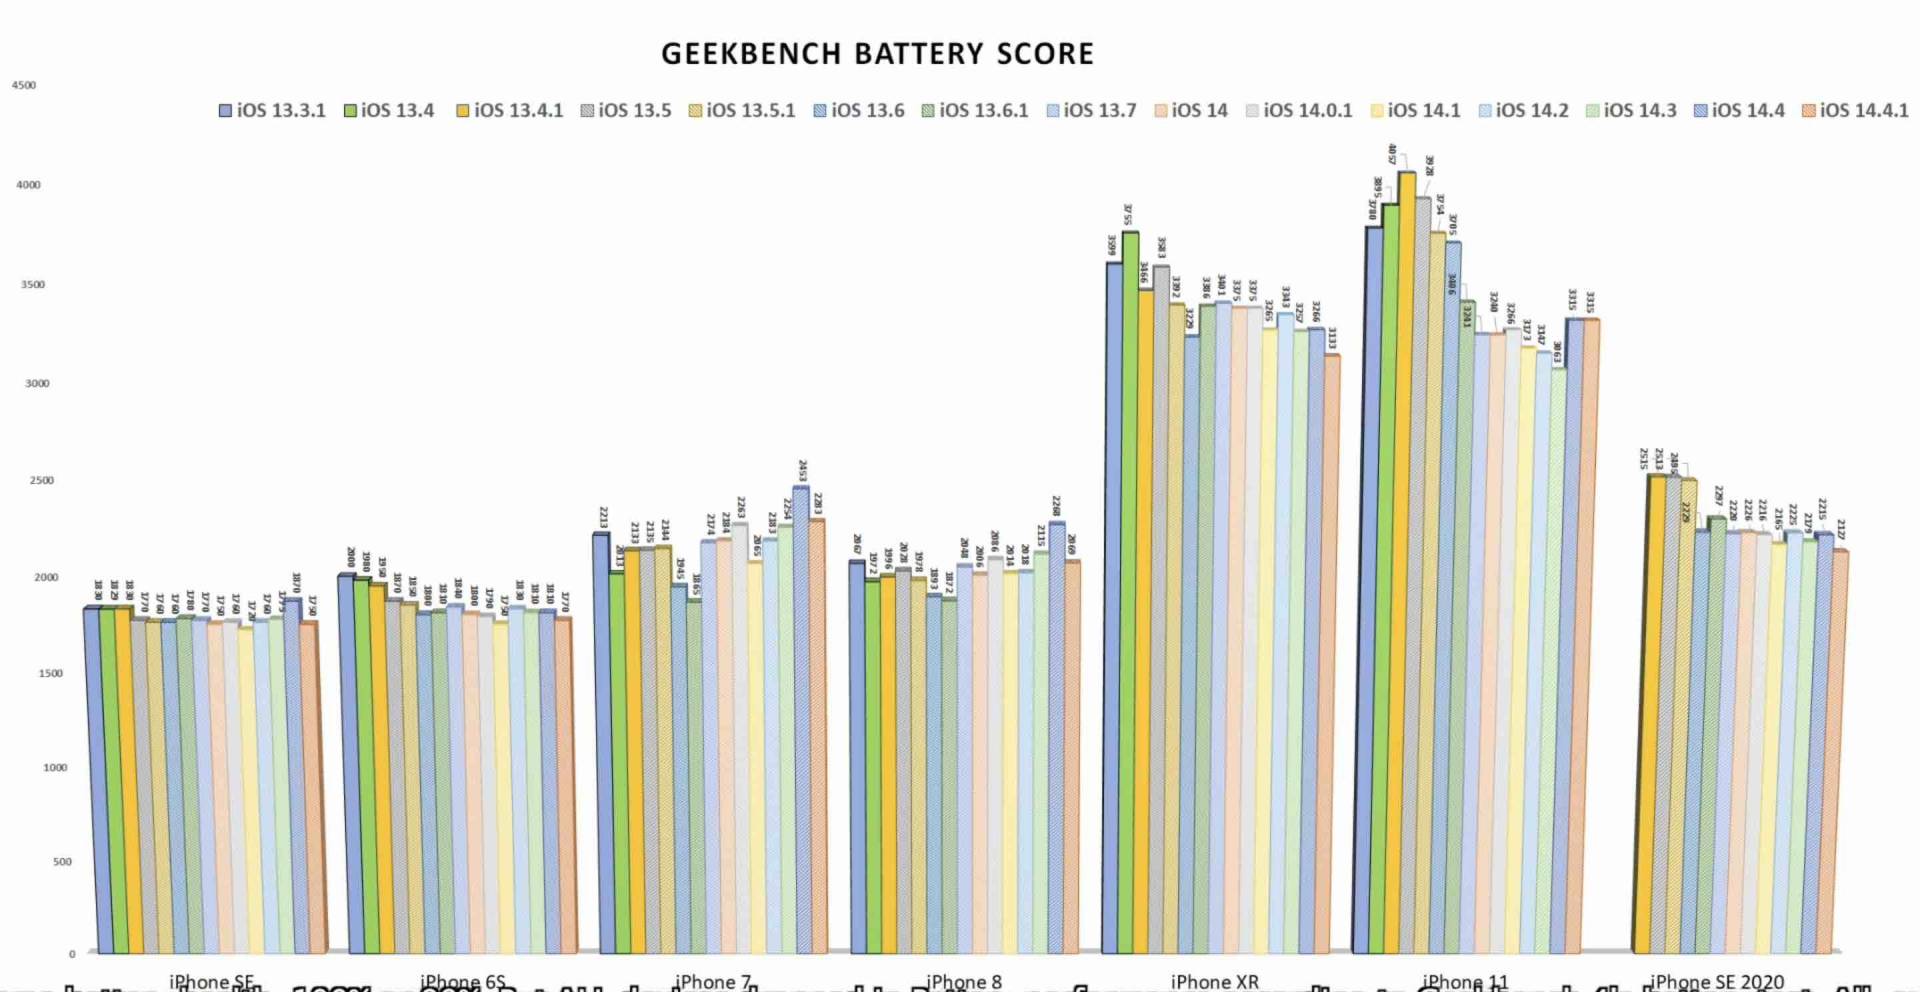 iOS 14.4.1 znižuje výdrž batérie skoro pri každom testovanom iPhone!